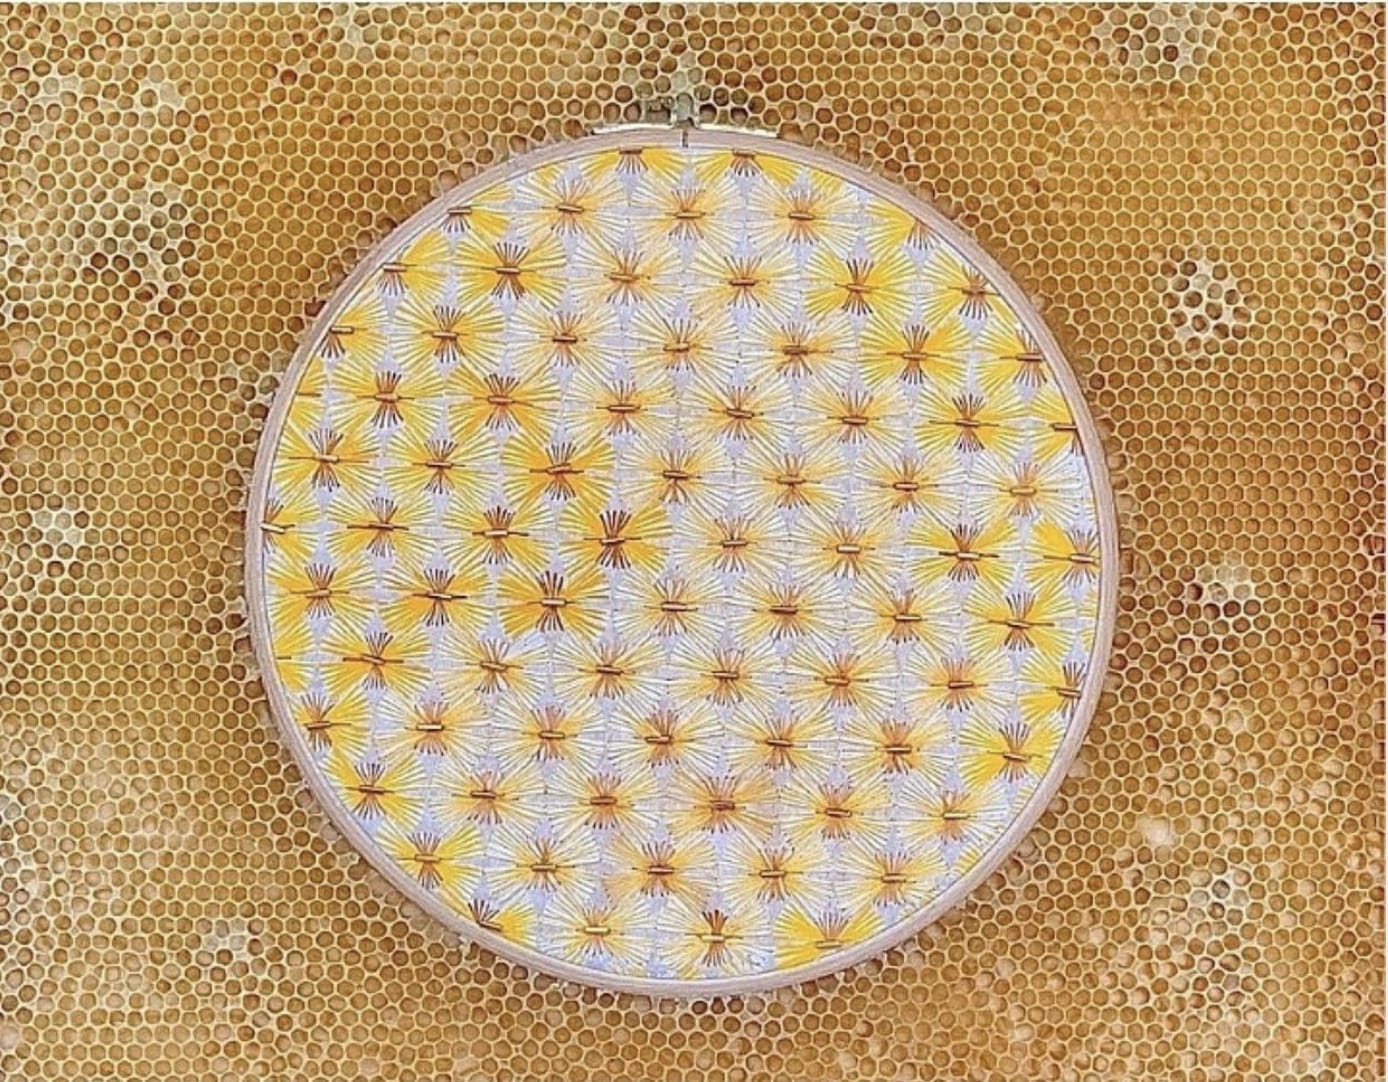 Broderie représentant un motif blanc, jaune et cuivré avec des perles, disposée dans une ruche